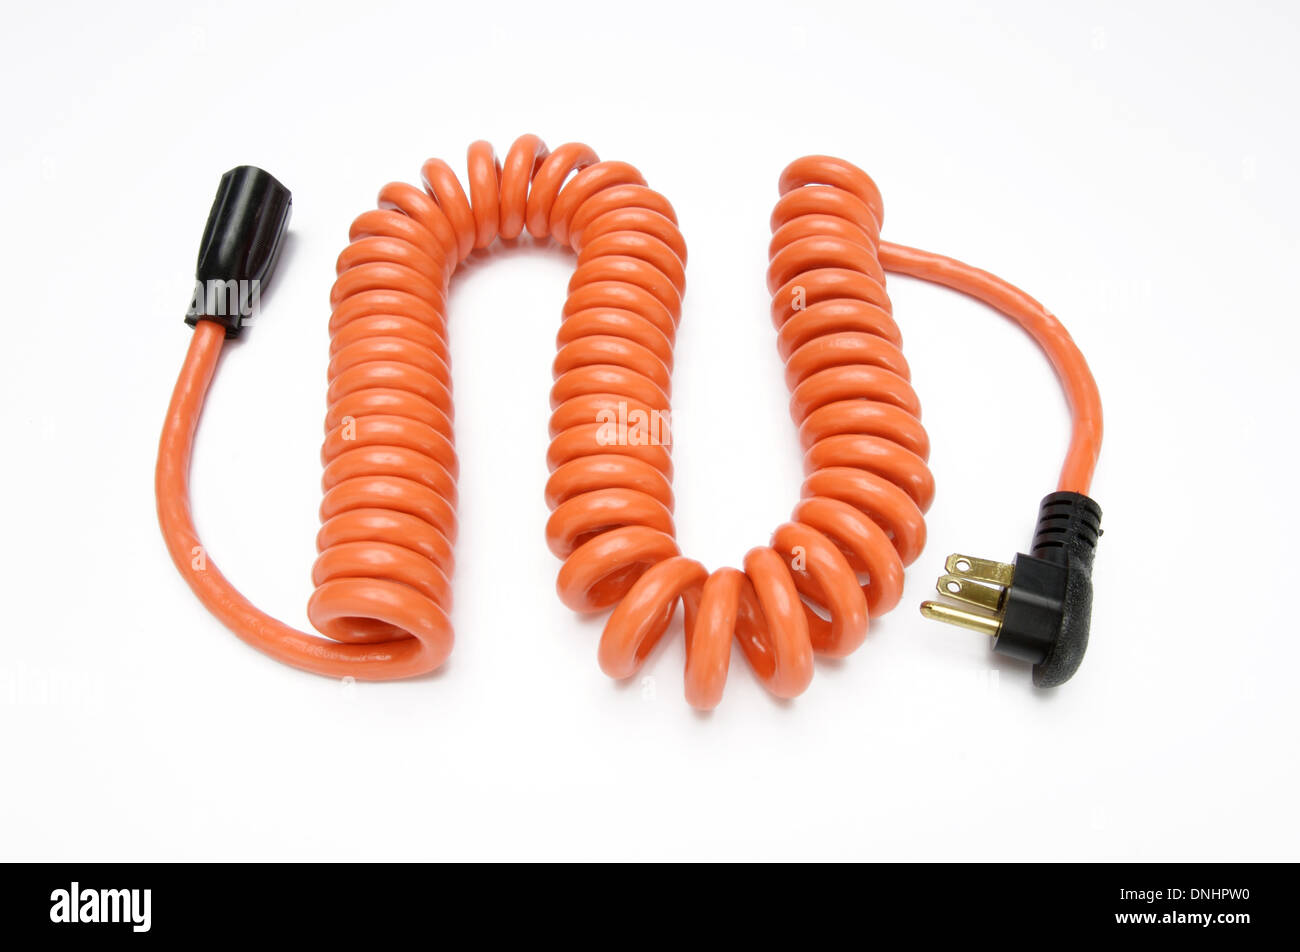 Un cable de alimentación eléctrica en espiral naranja sobre un fondo blanco. Foto de stock